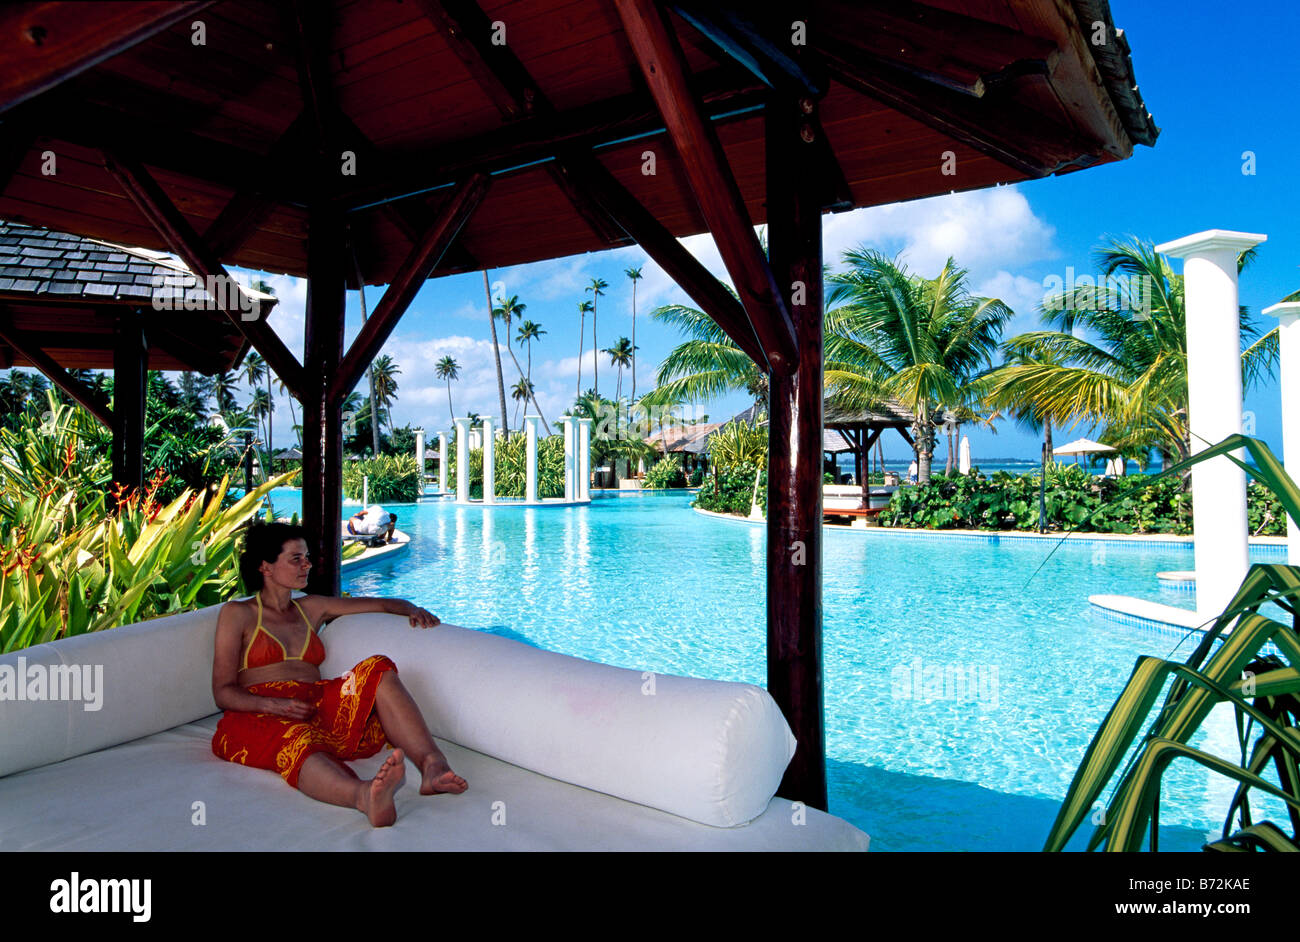 Gran Melia Resort Rio Grande Puerto Rico-Karibik Stockfoto